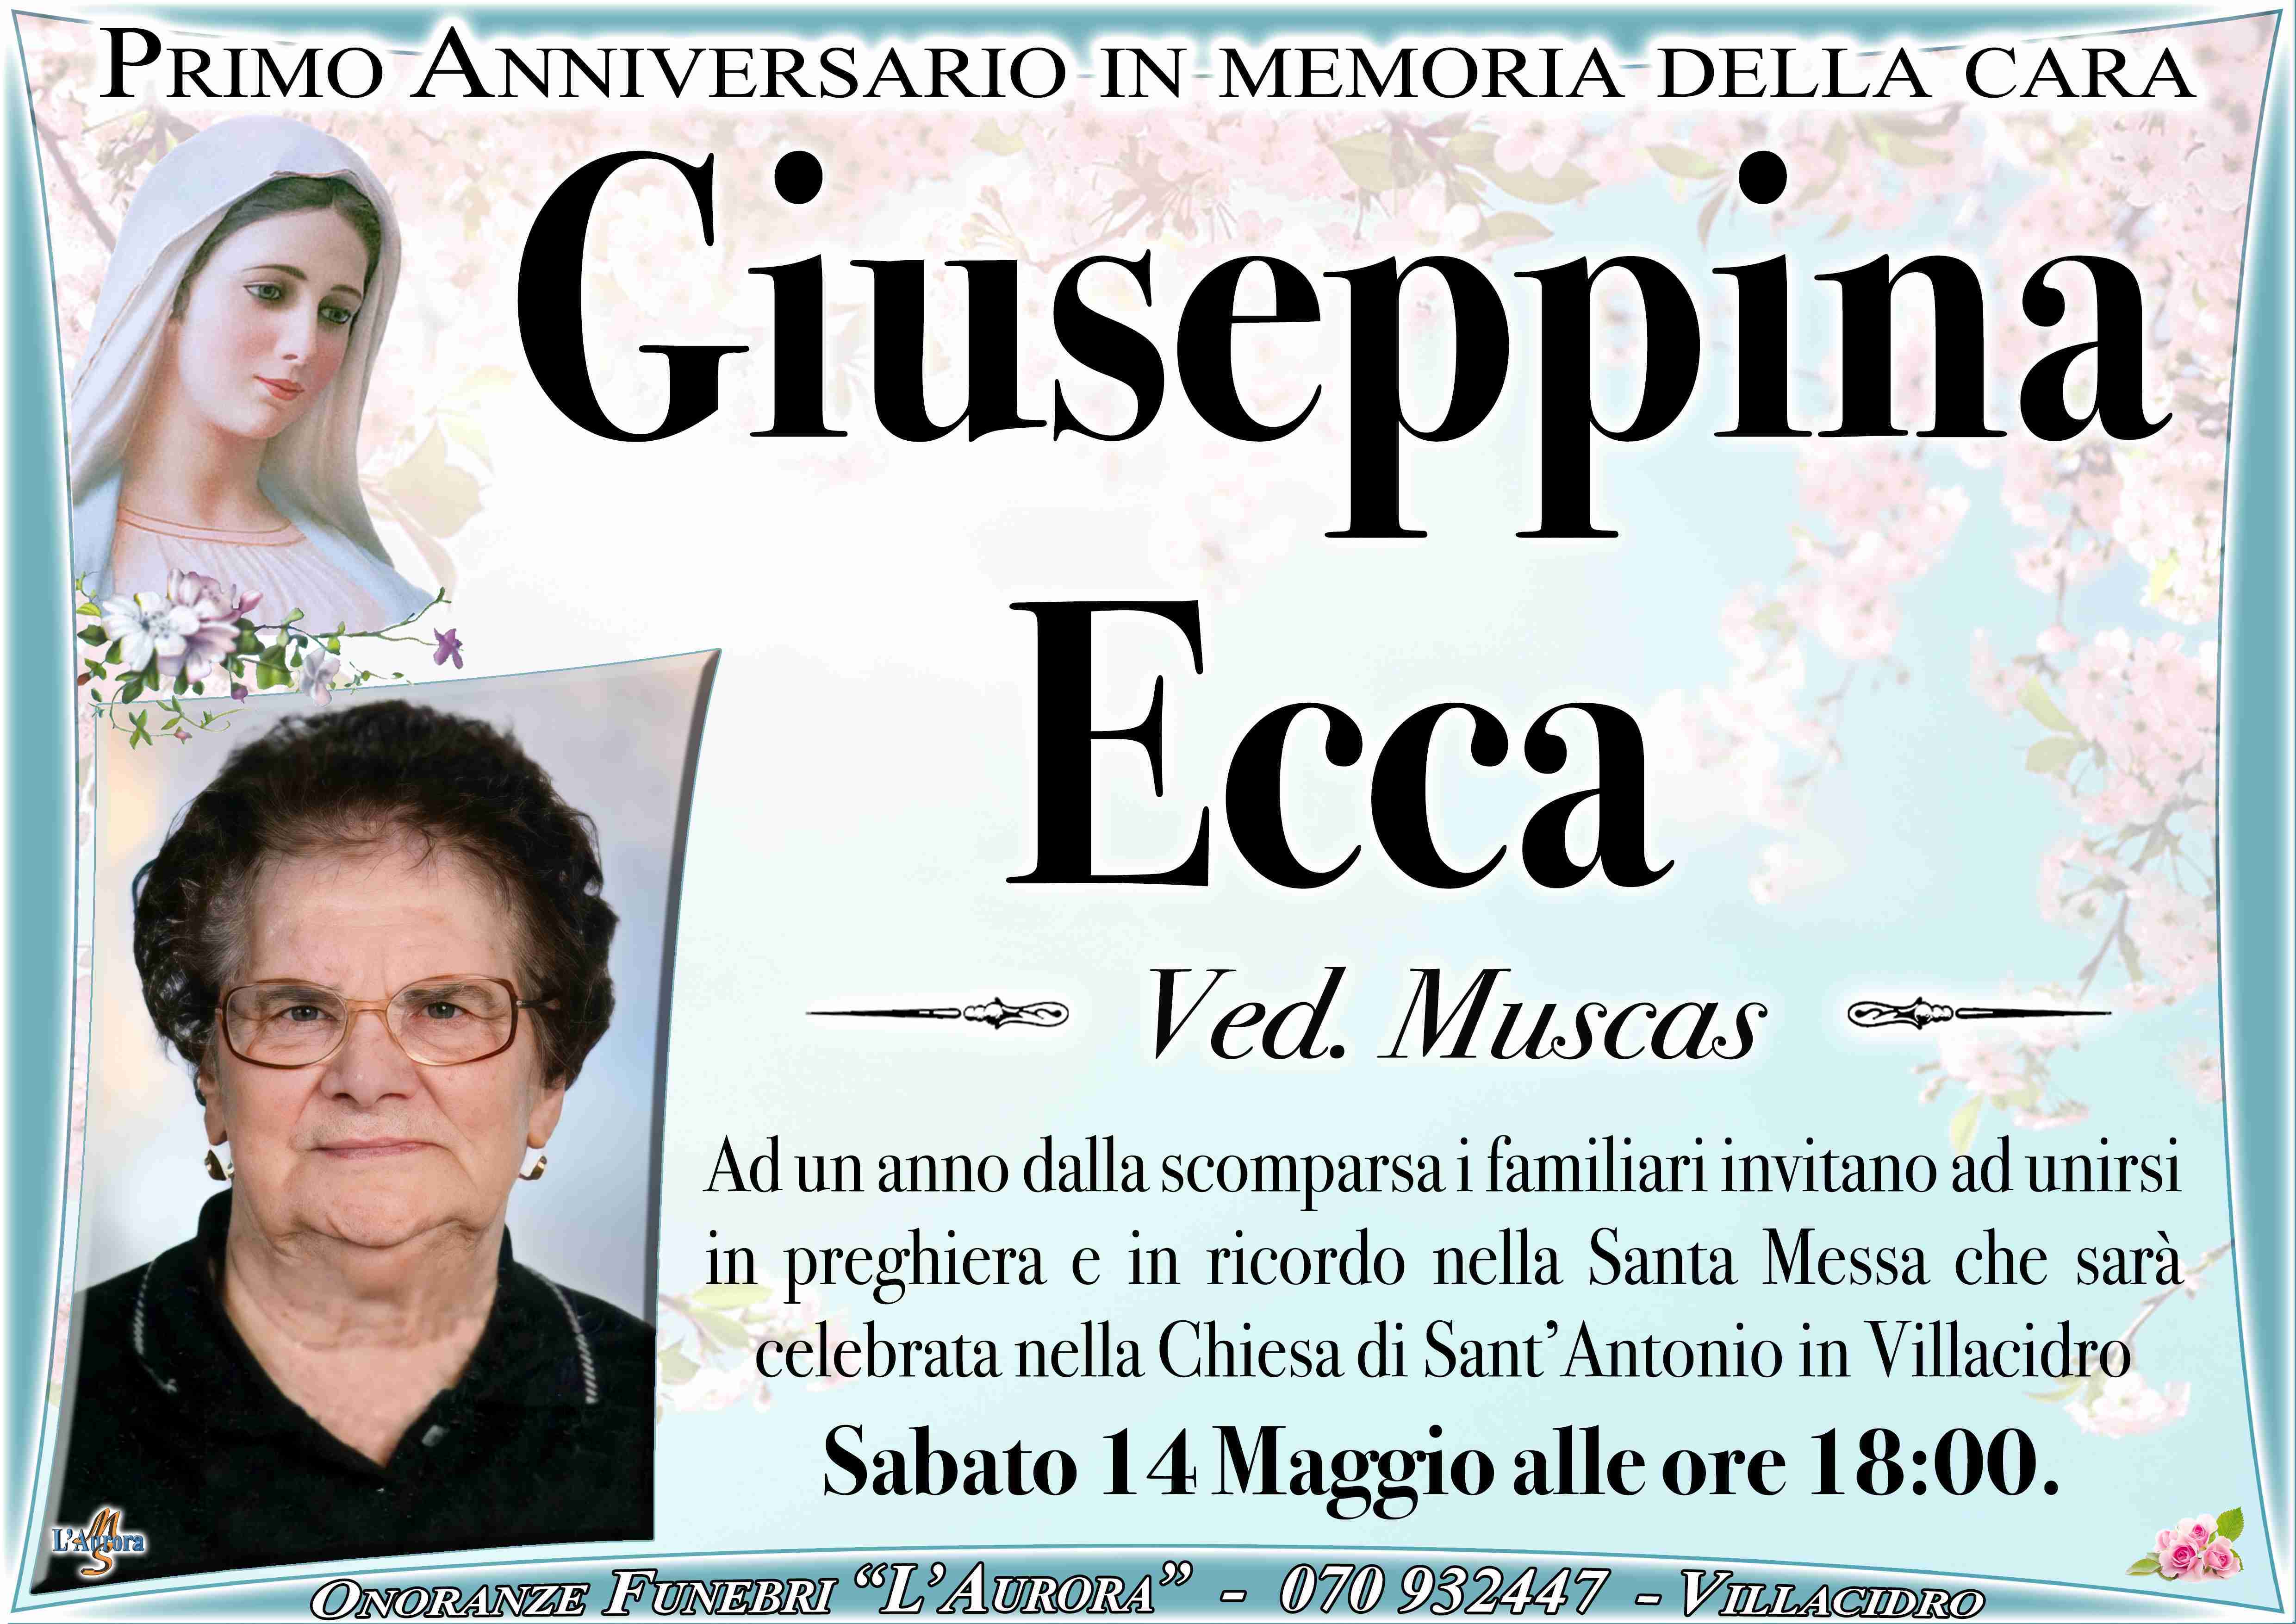 Giuseppina Ecca